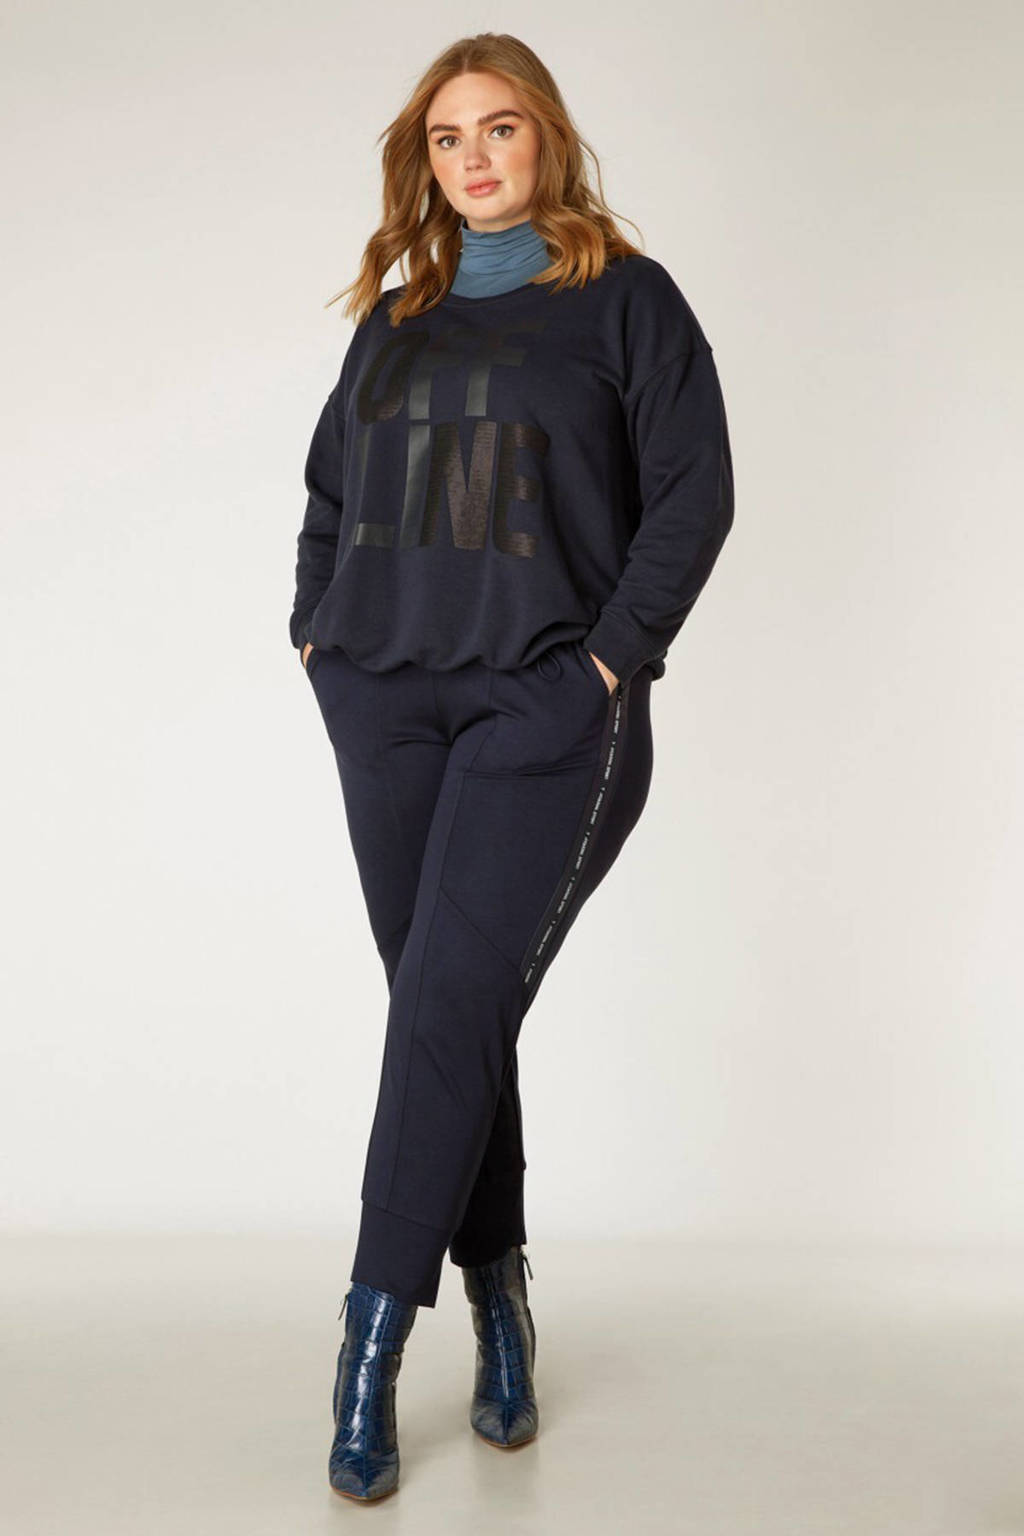 Donkerblauw en zwarte dames Yesta sweater Bobbo van katoen met tekst print, lange mouwen, ronde hals en tunnelkoord